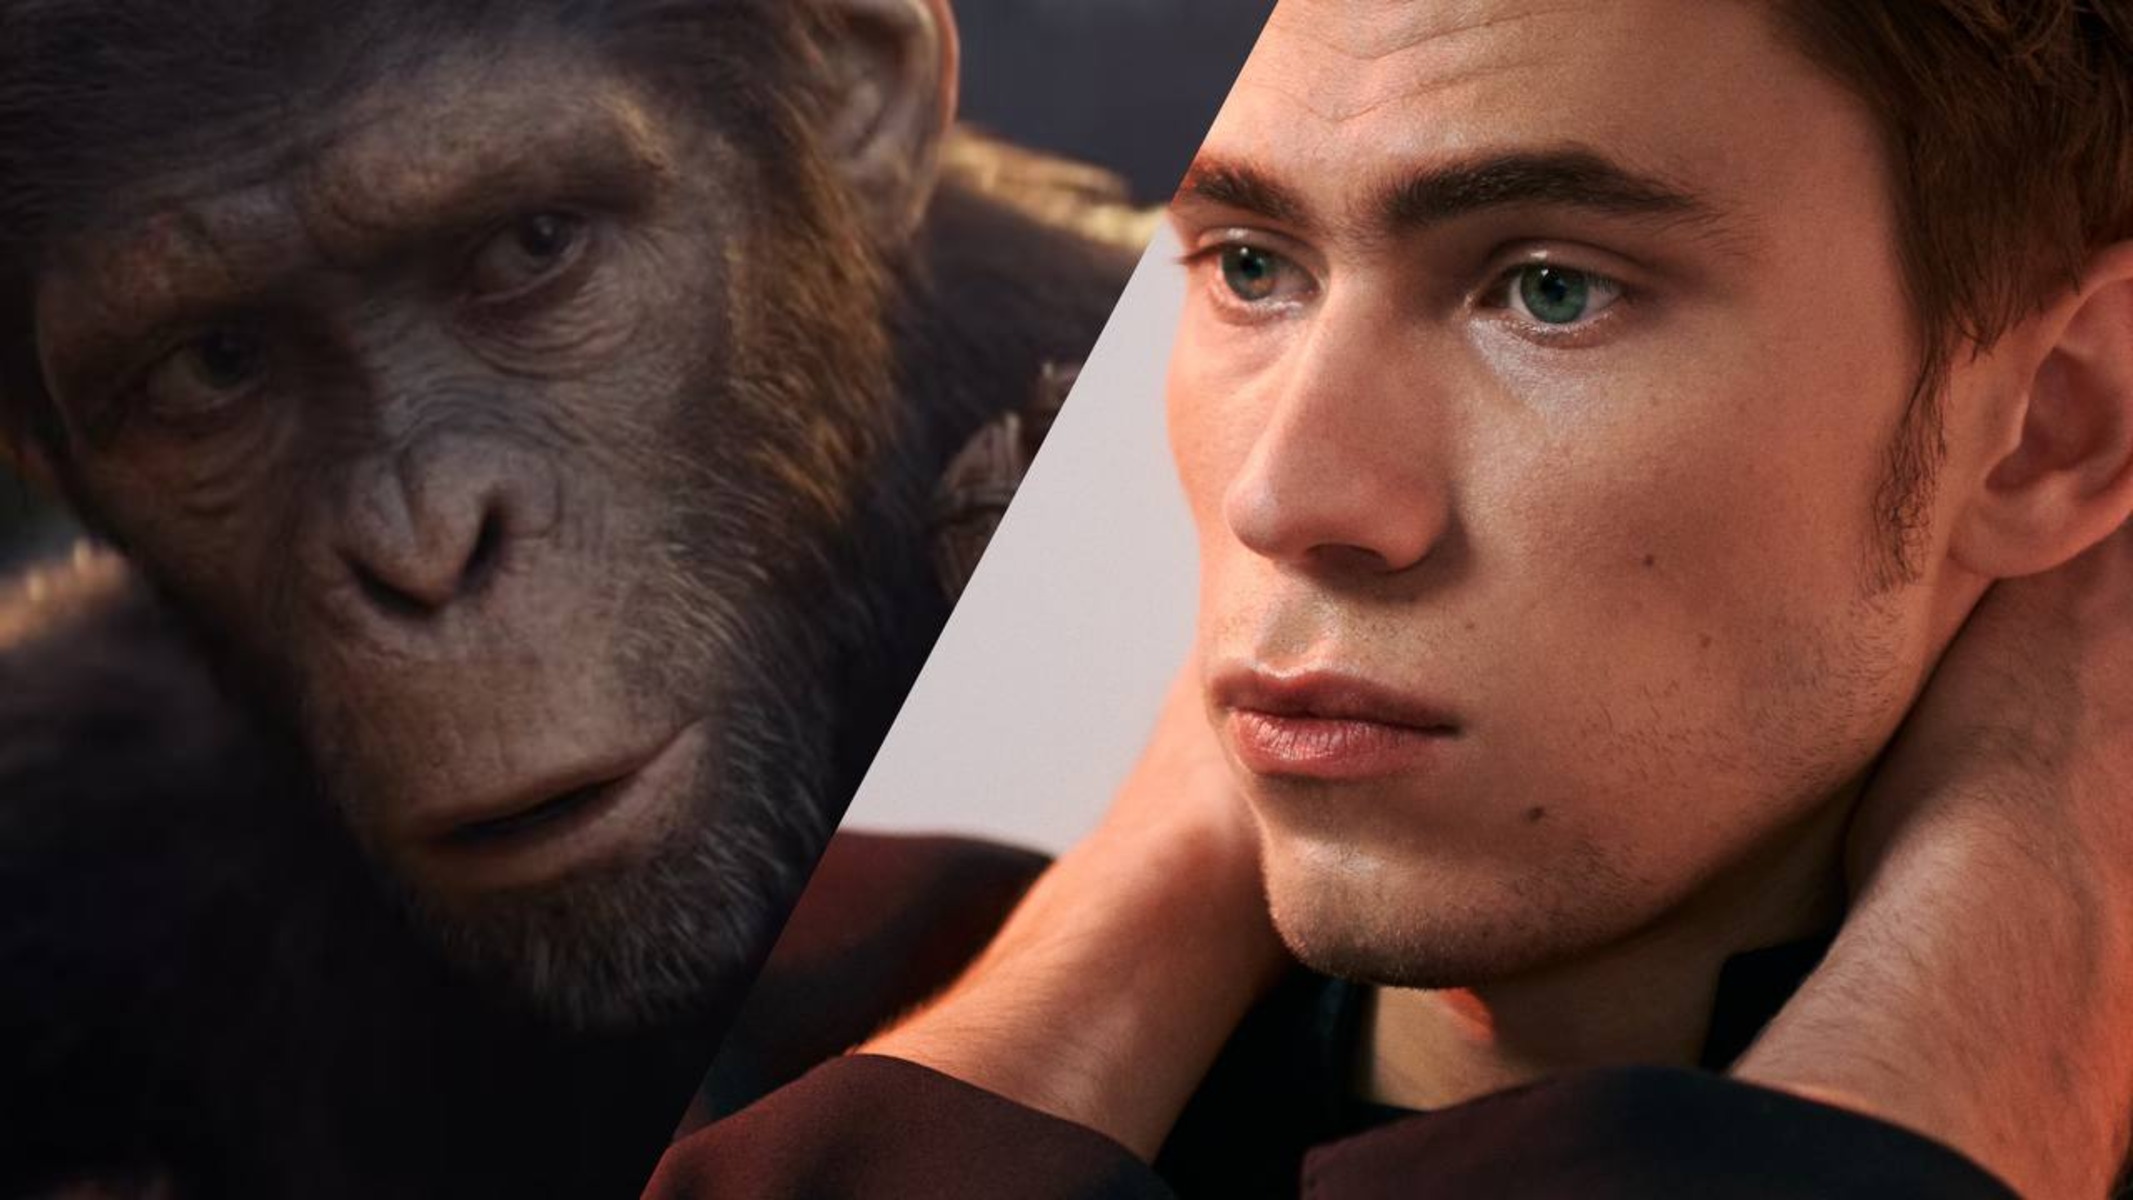 La scimmia Noa ne "Il regno del pianeta delle scimmie" affiancata al volto dell'attore che l'interpreta, Owen Teague.